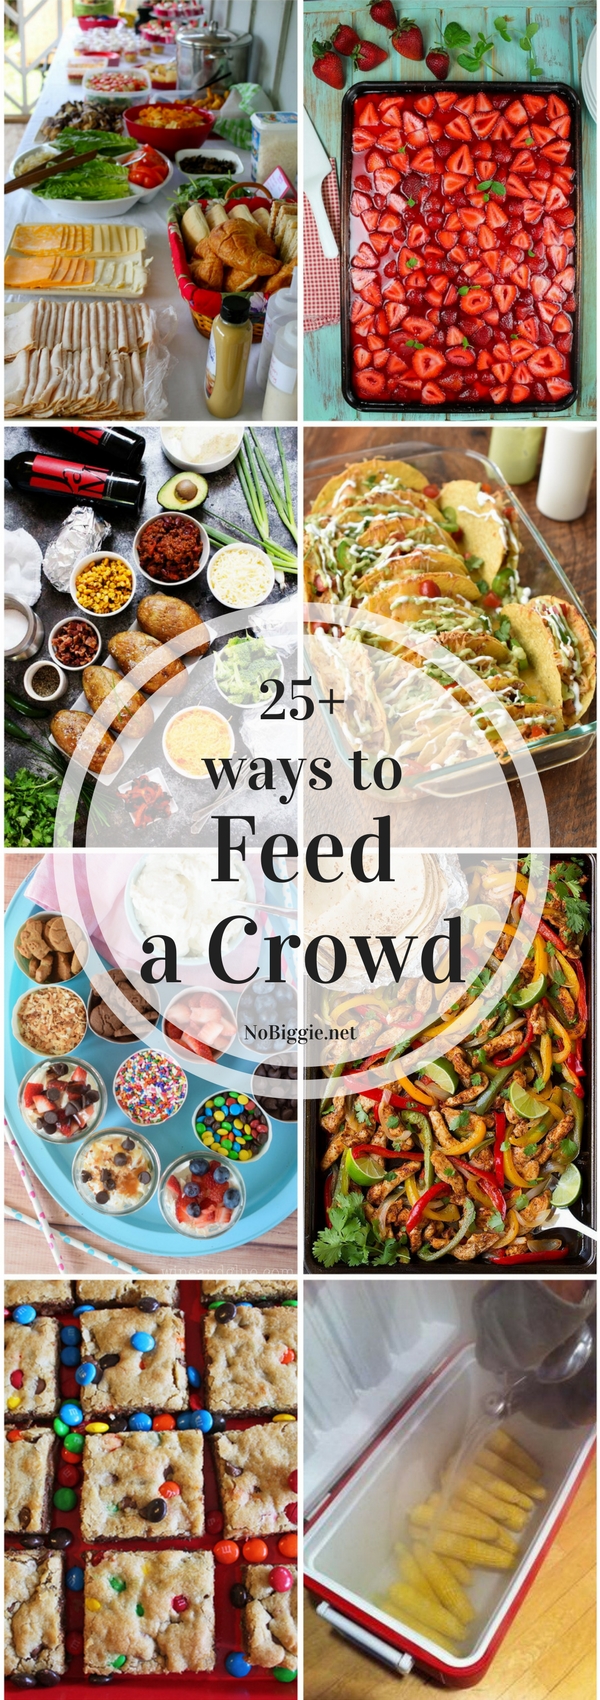 25+ ways to Feed a Crowd | NoBiggie.net